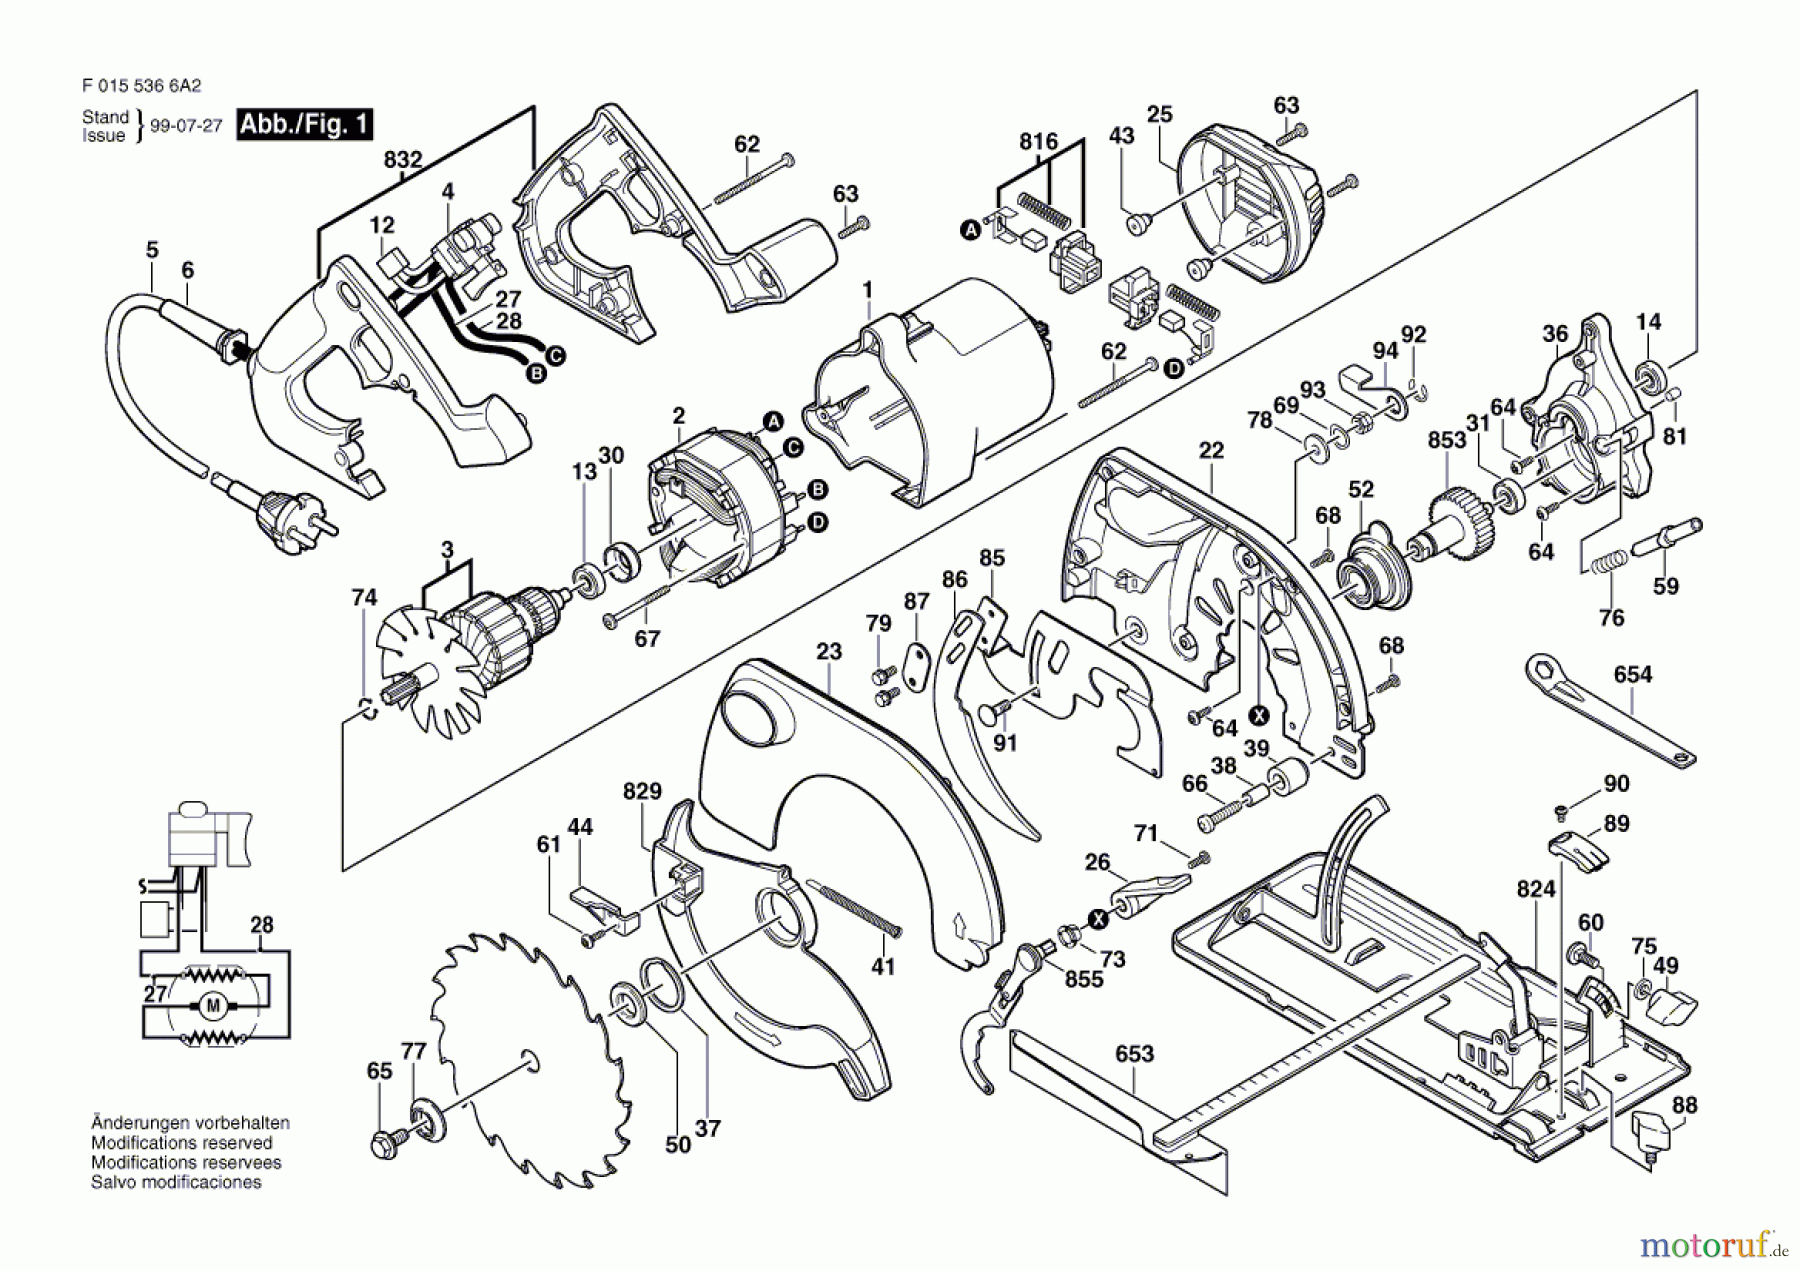  Bosch Werkzeug Handkreissäge 5366 Seite 1